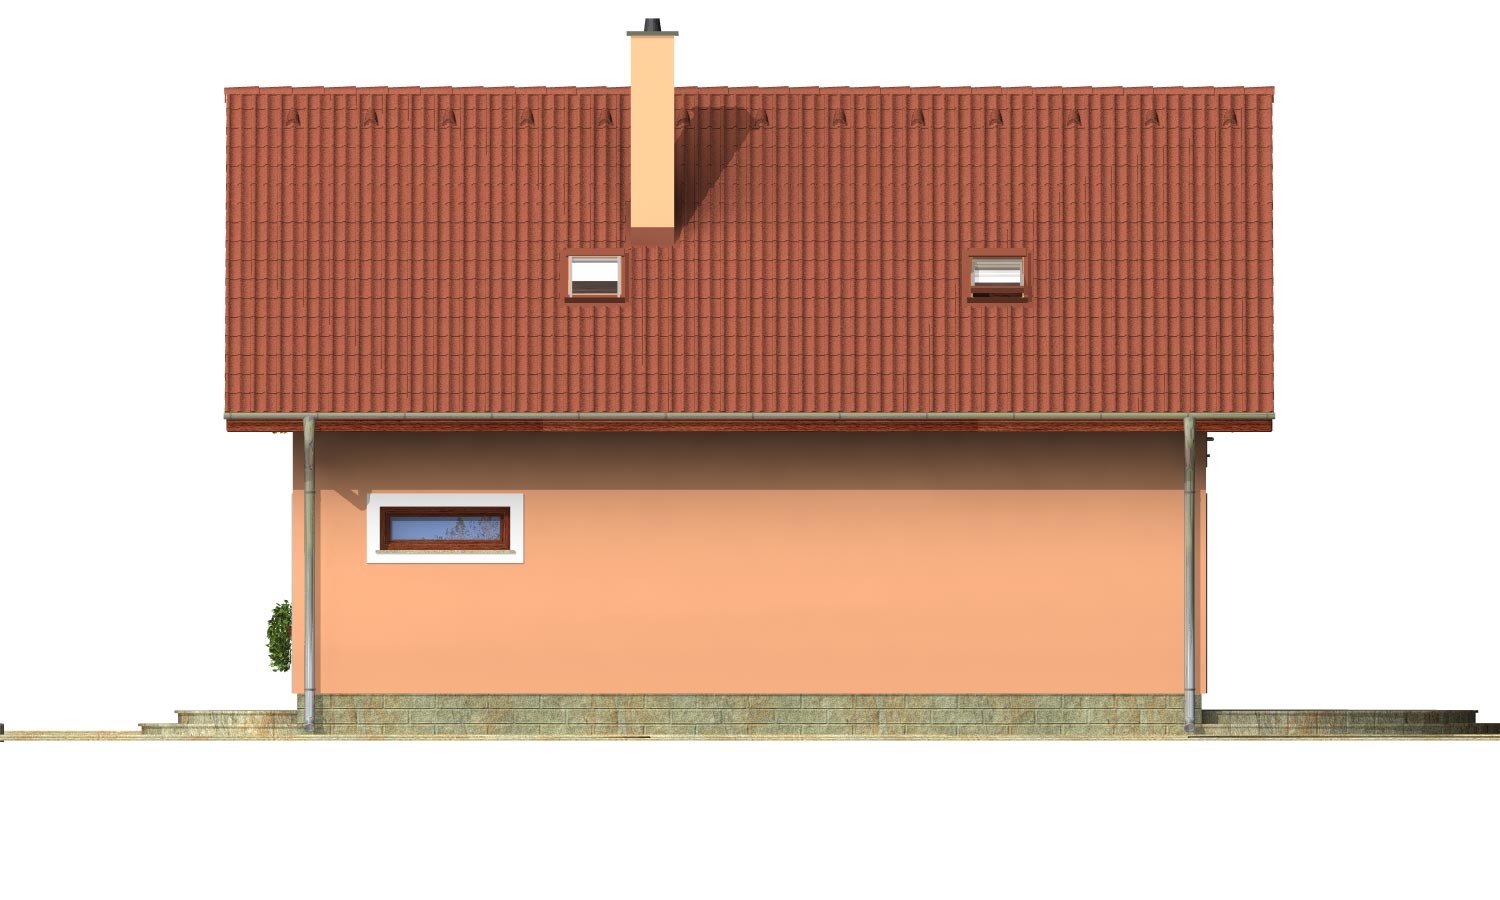 Zrkadlový pohľad 3. - Projekt domu na úzký pozemek s garáží.